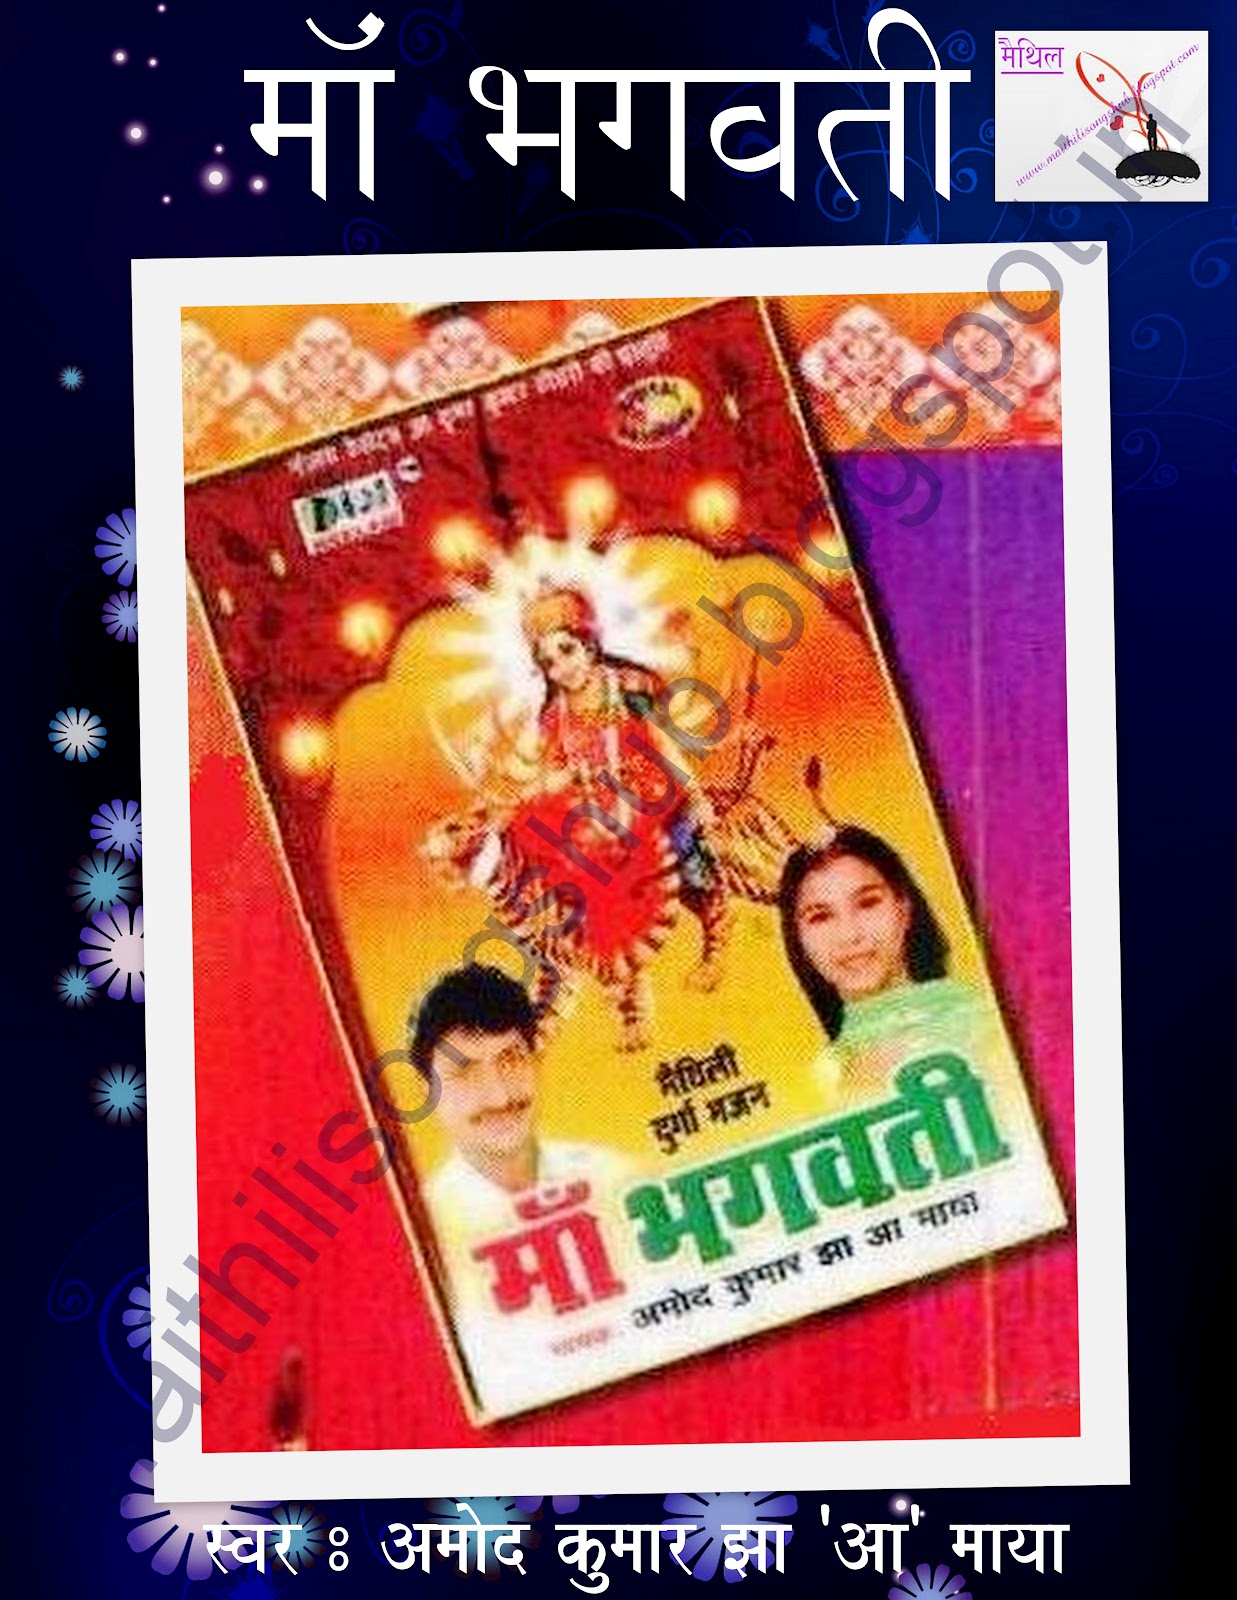 Bhojpuri Music Jagat : MAA BHAGWATI - AMOD KUMAR JHA & MAYA